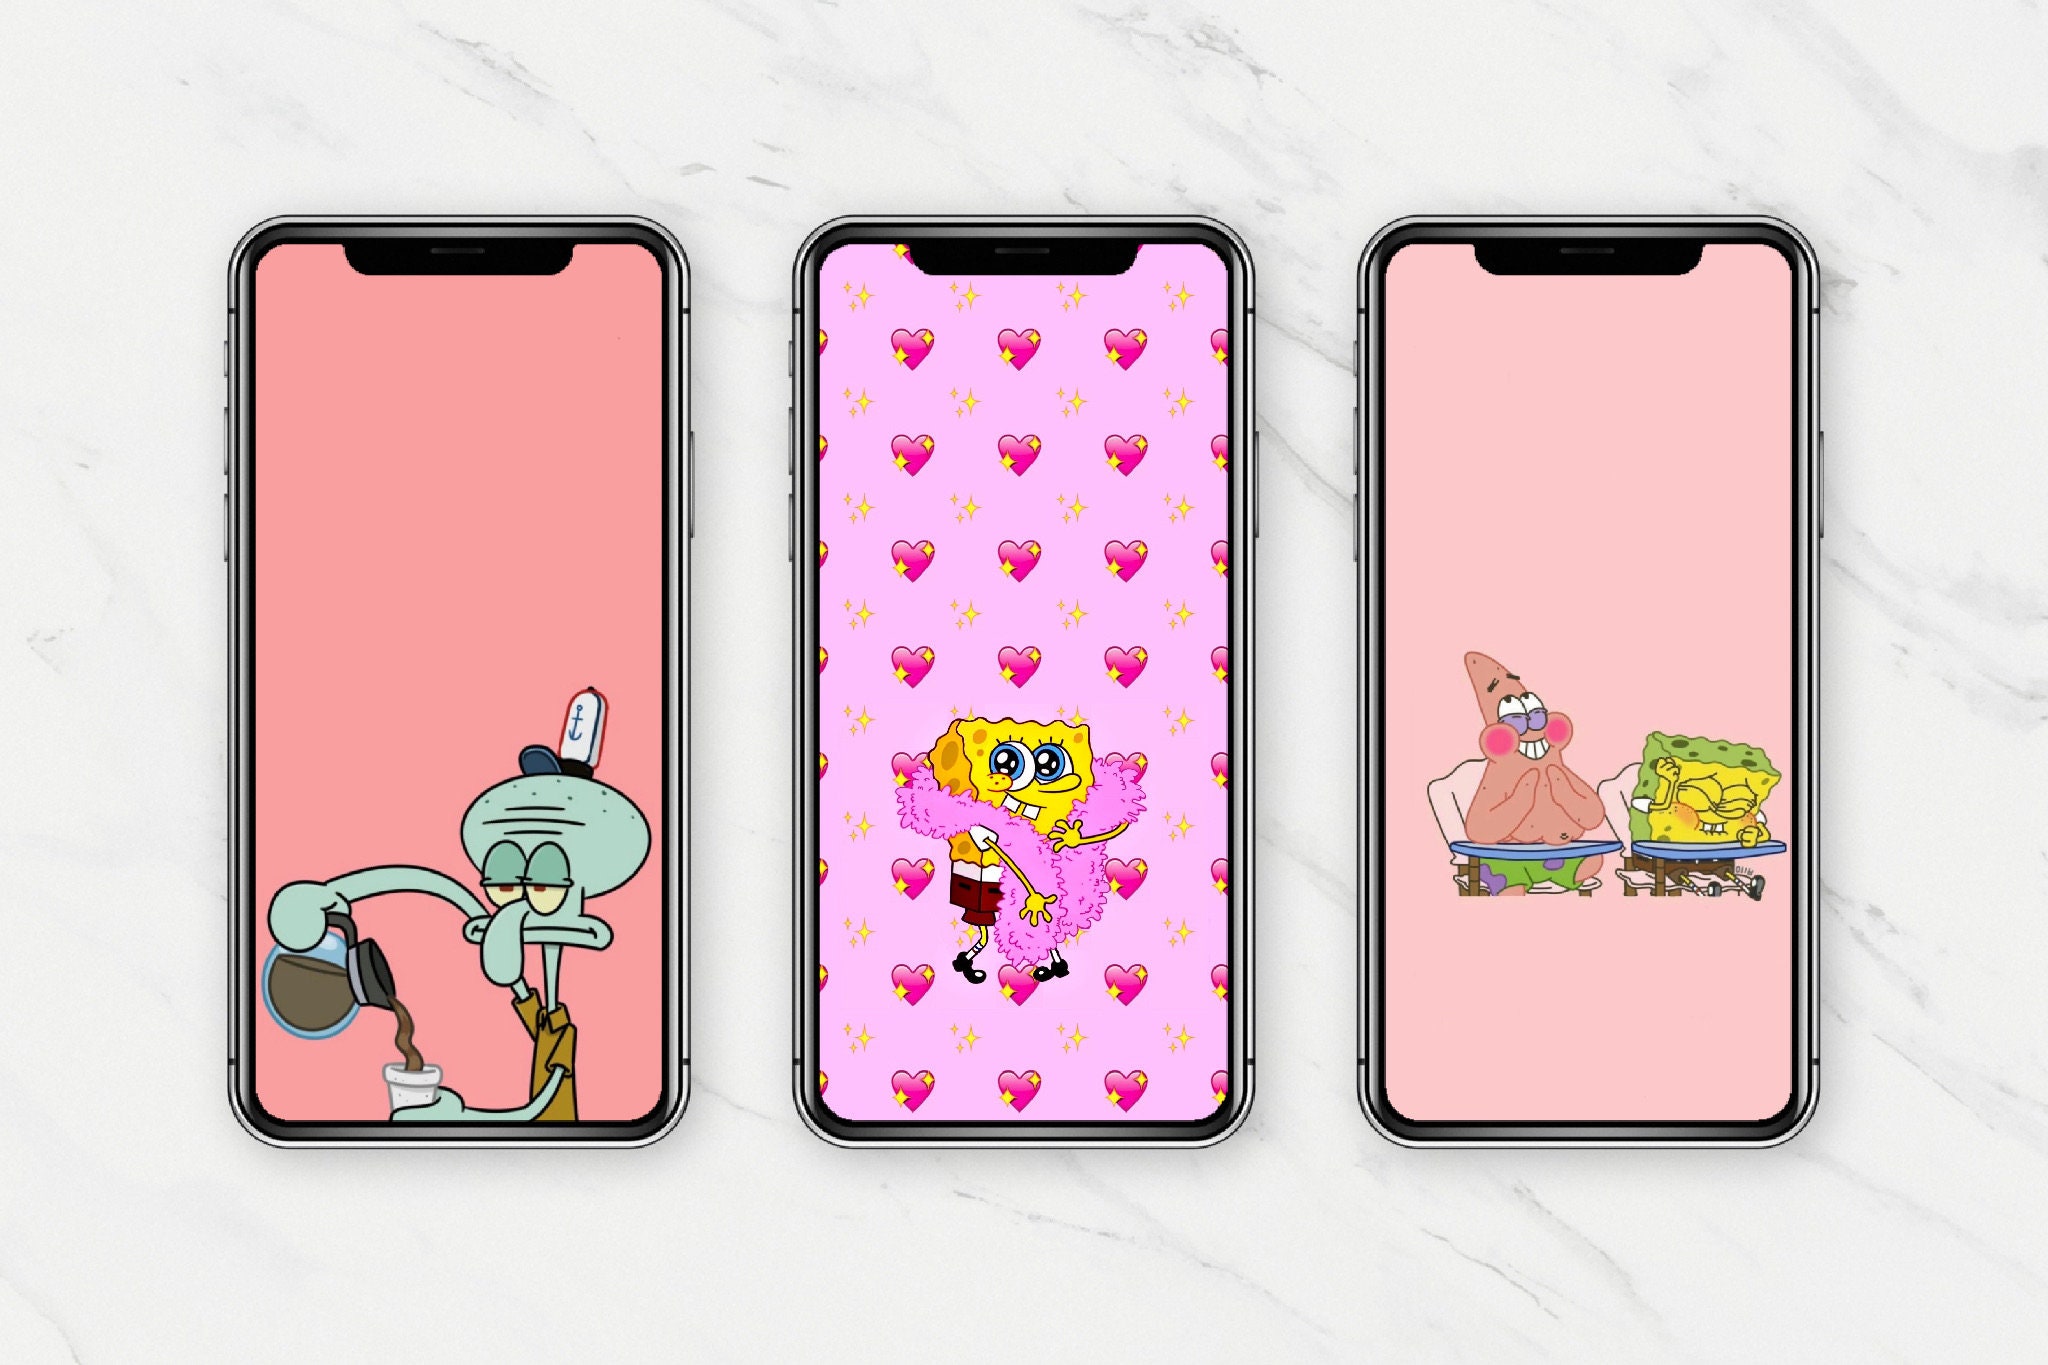 spongebob iphone wallpaper